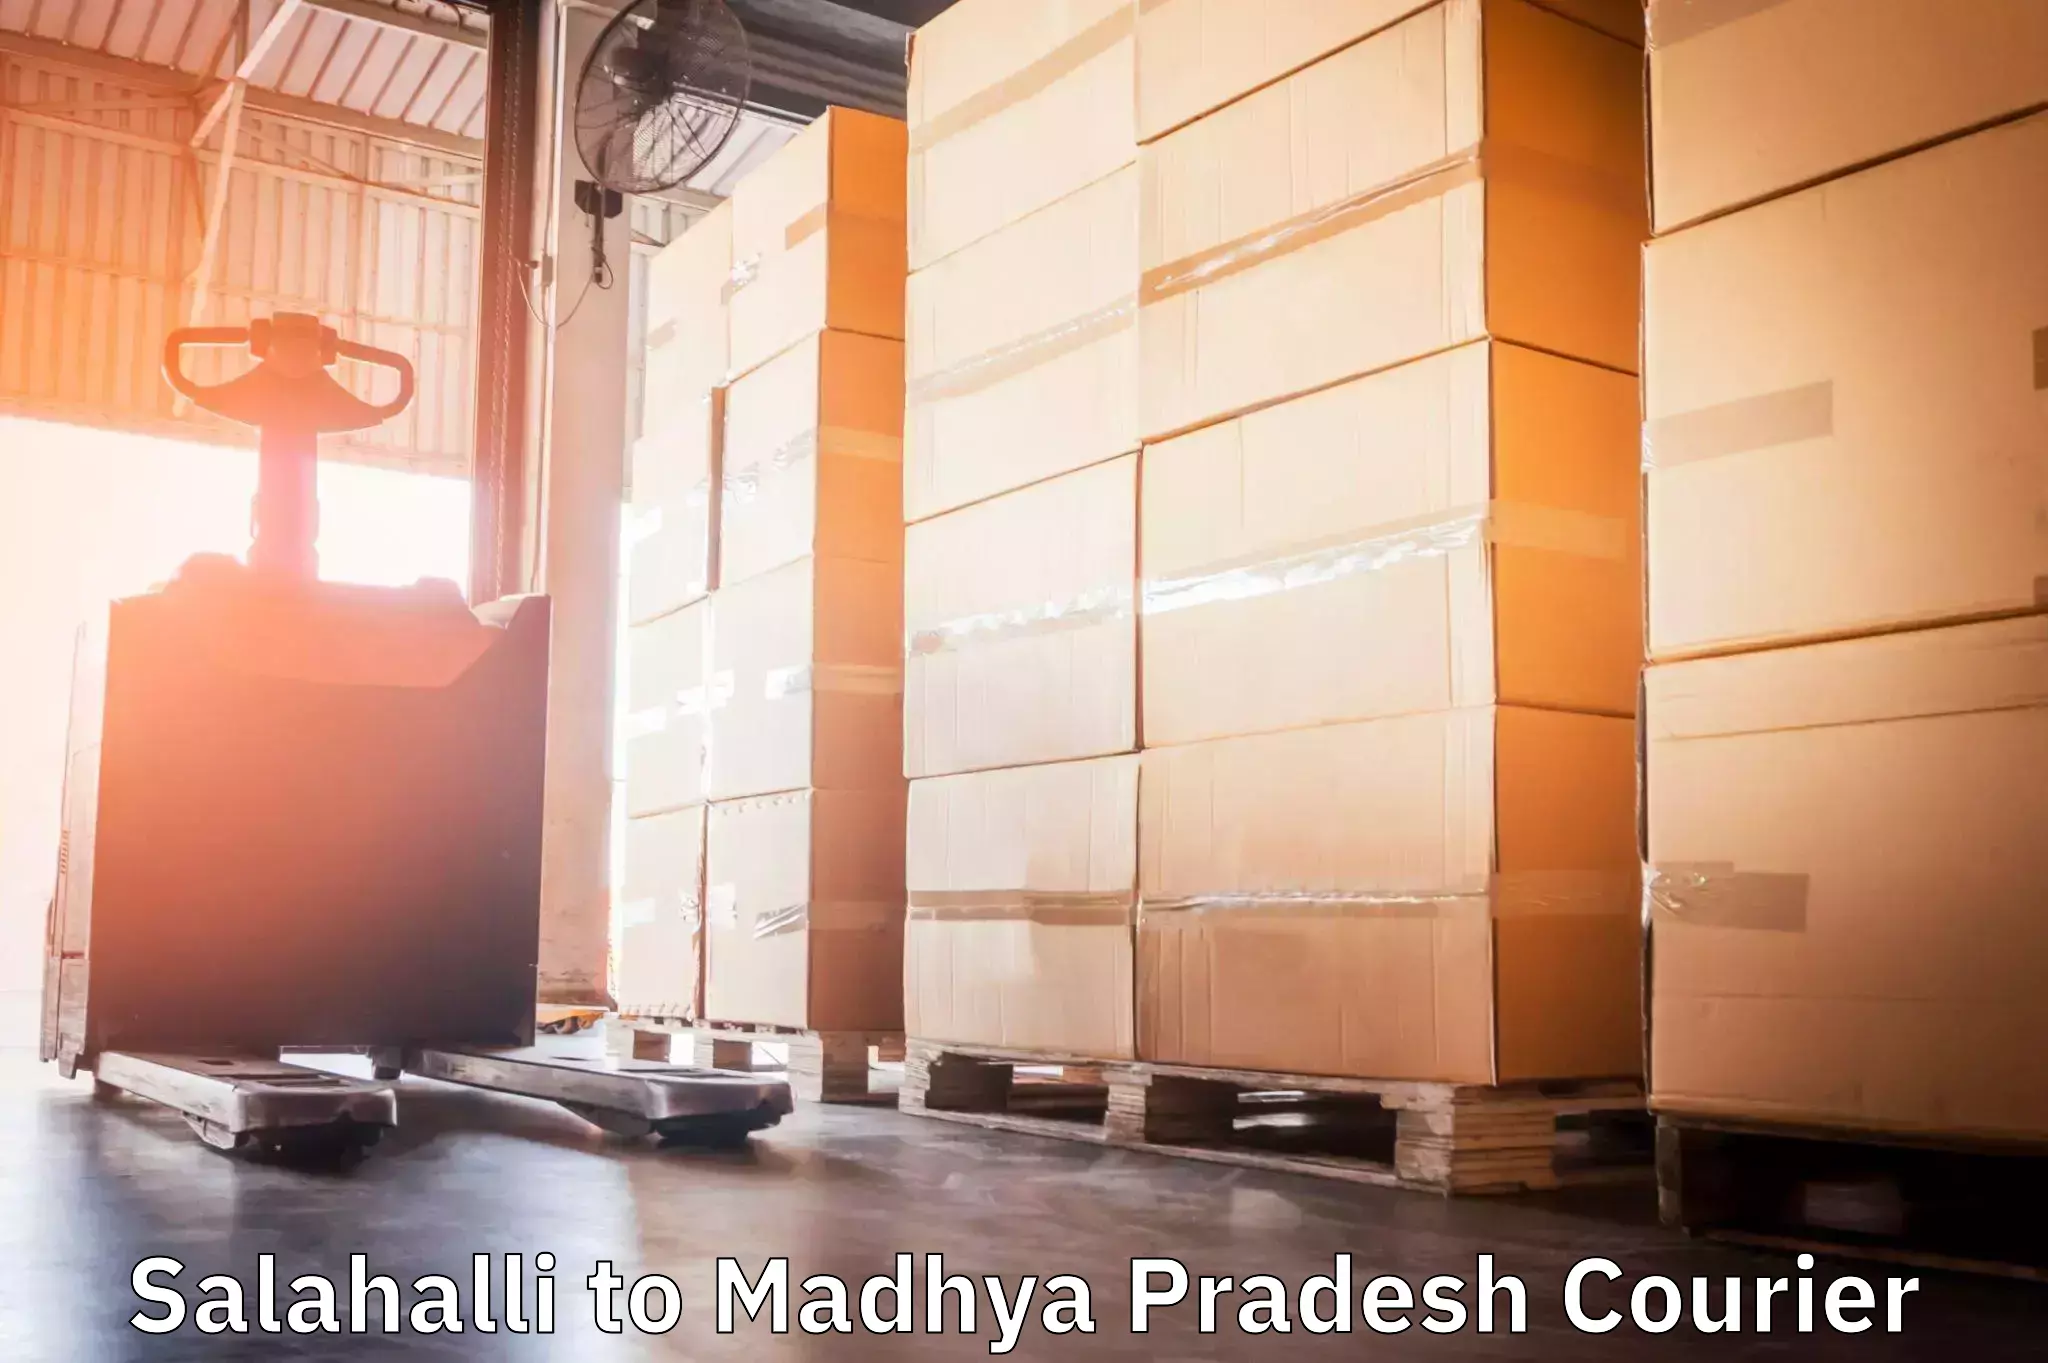 Global shipping solutions Salahalli to Madhya Pradesh